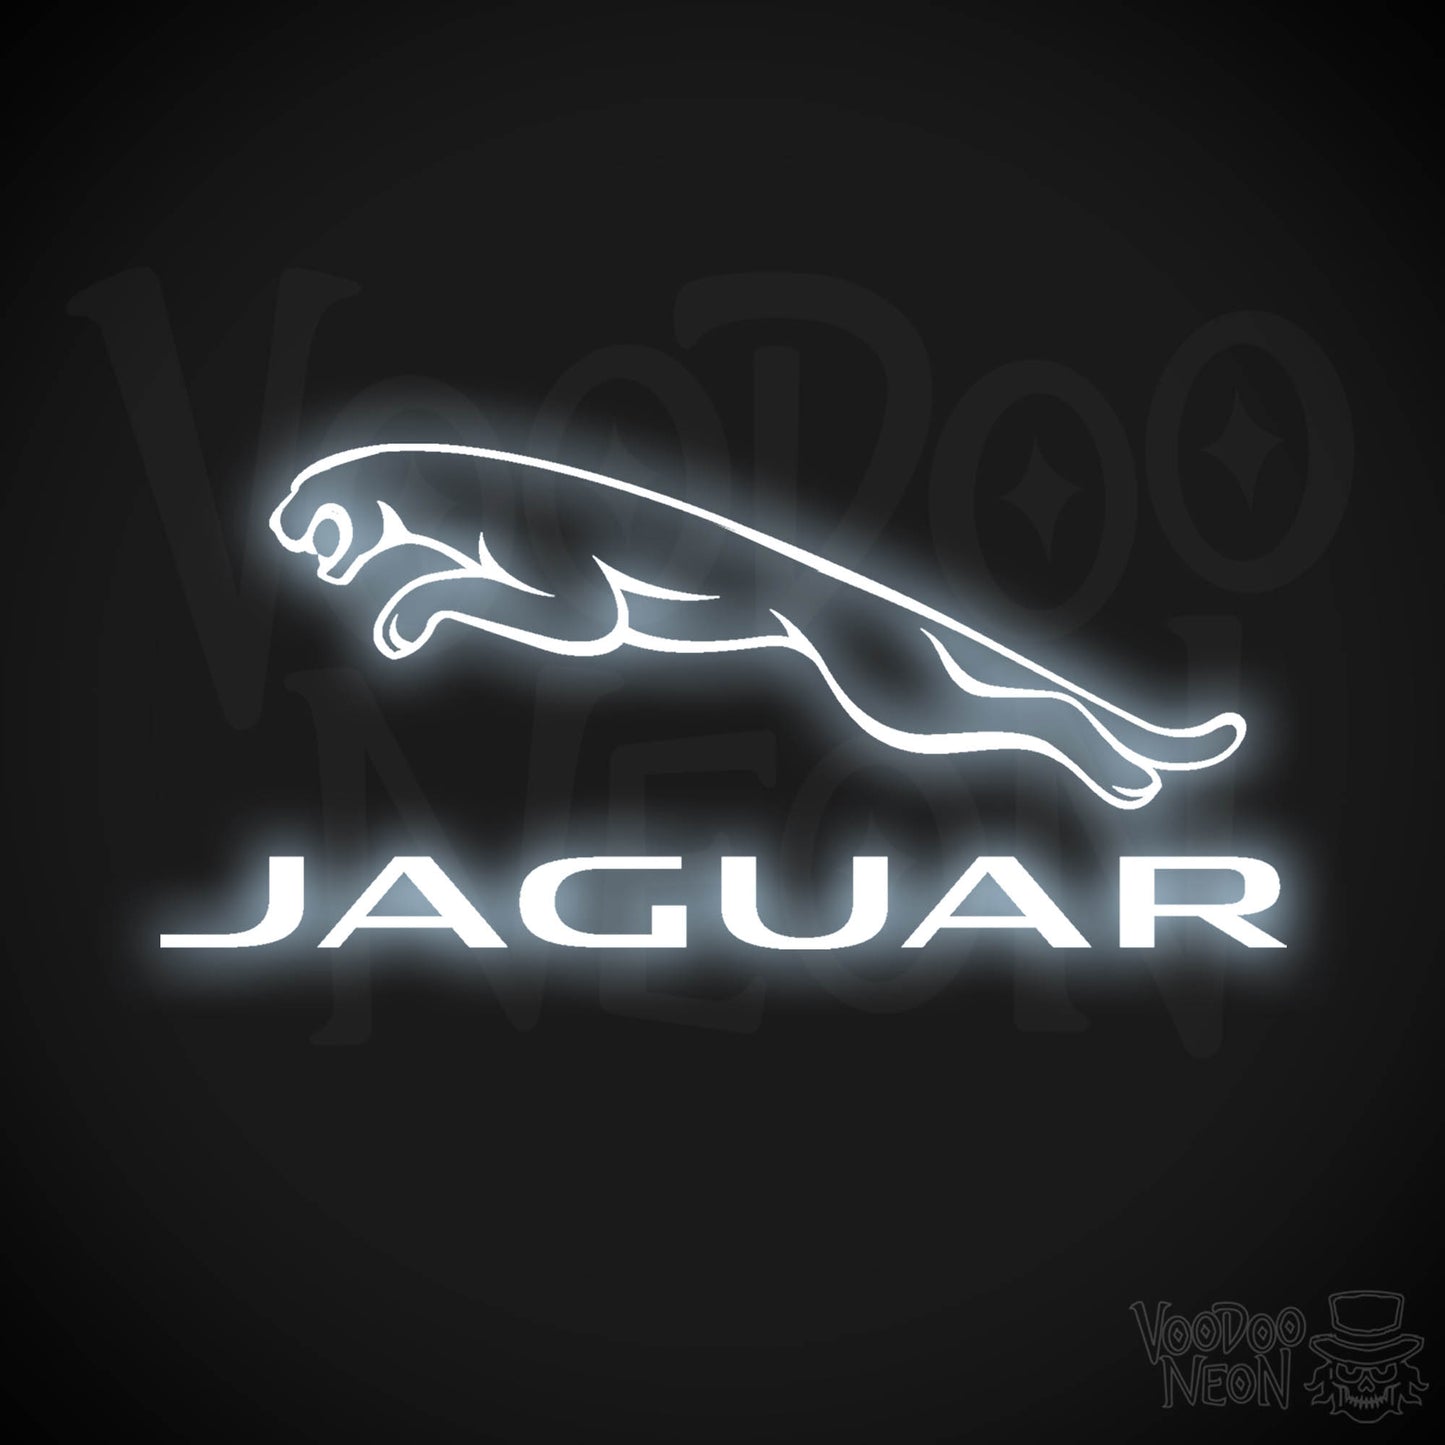 Jaguar Neon Sign - Neon Jaguar Sign| Jaguar Logo Wall Art - Color Cool White